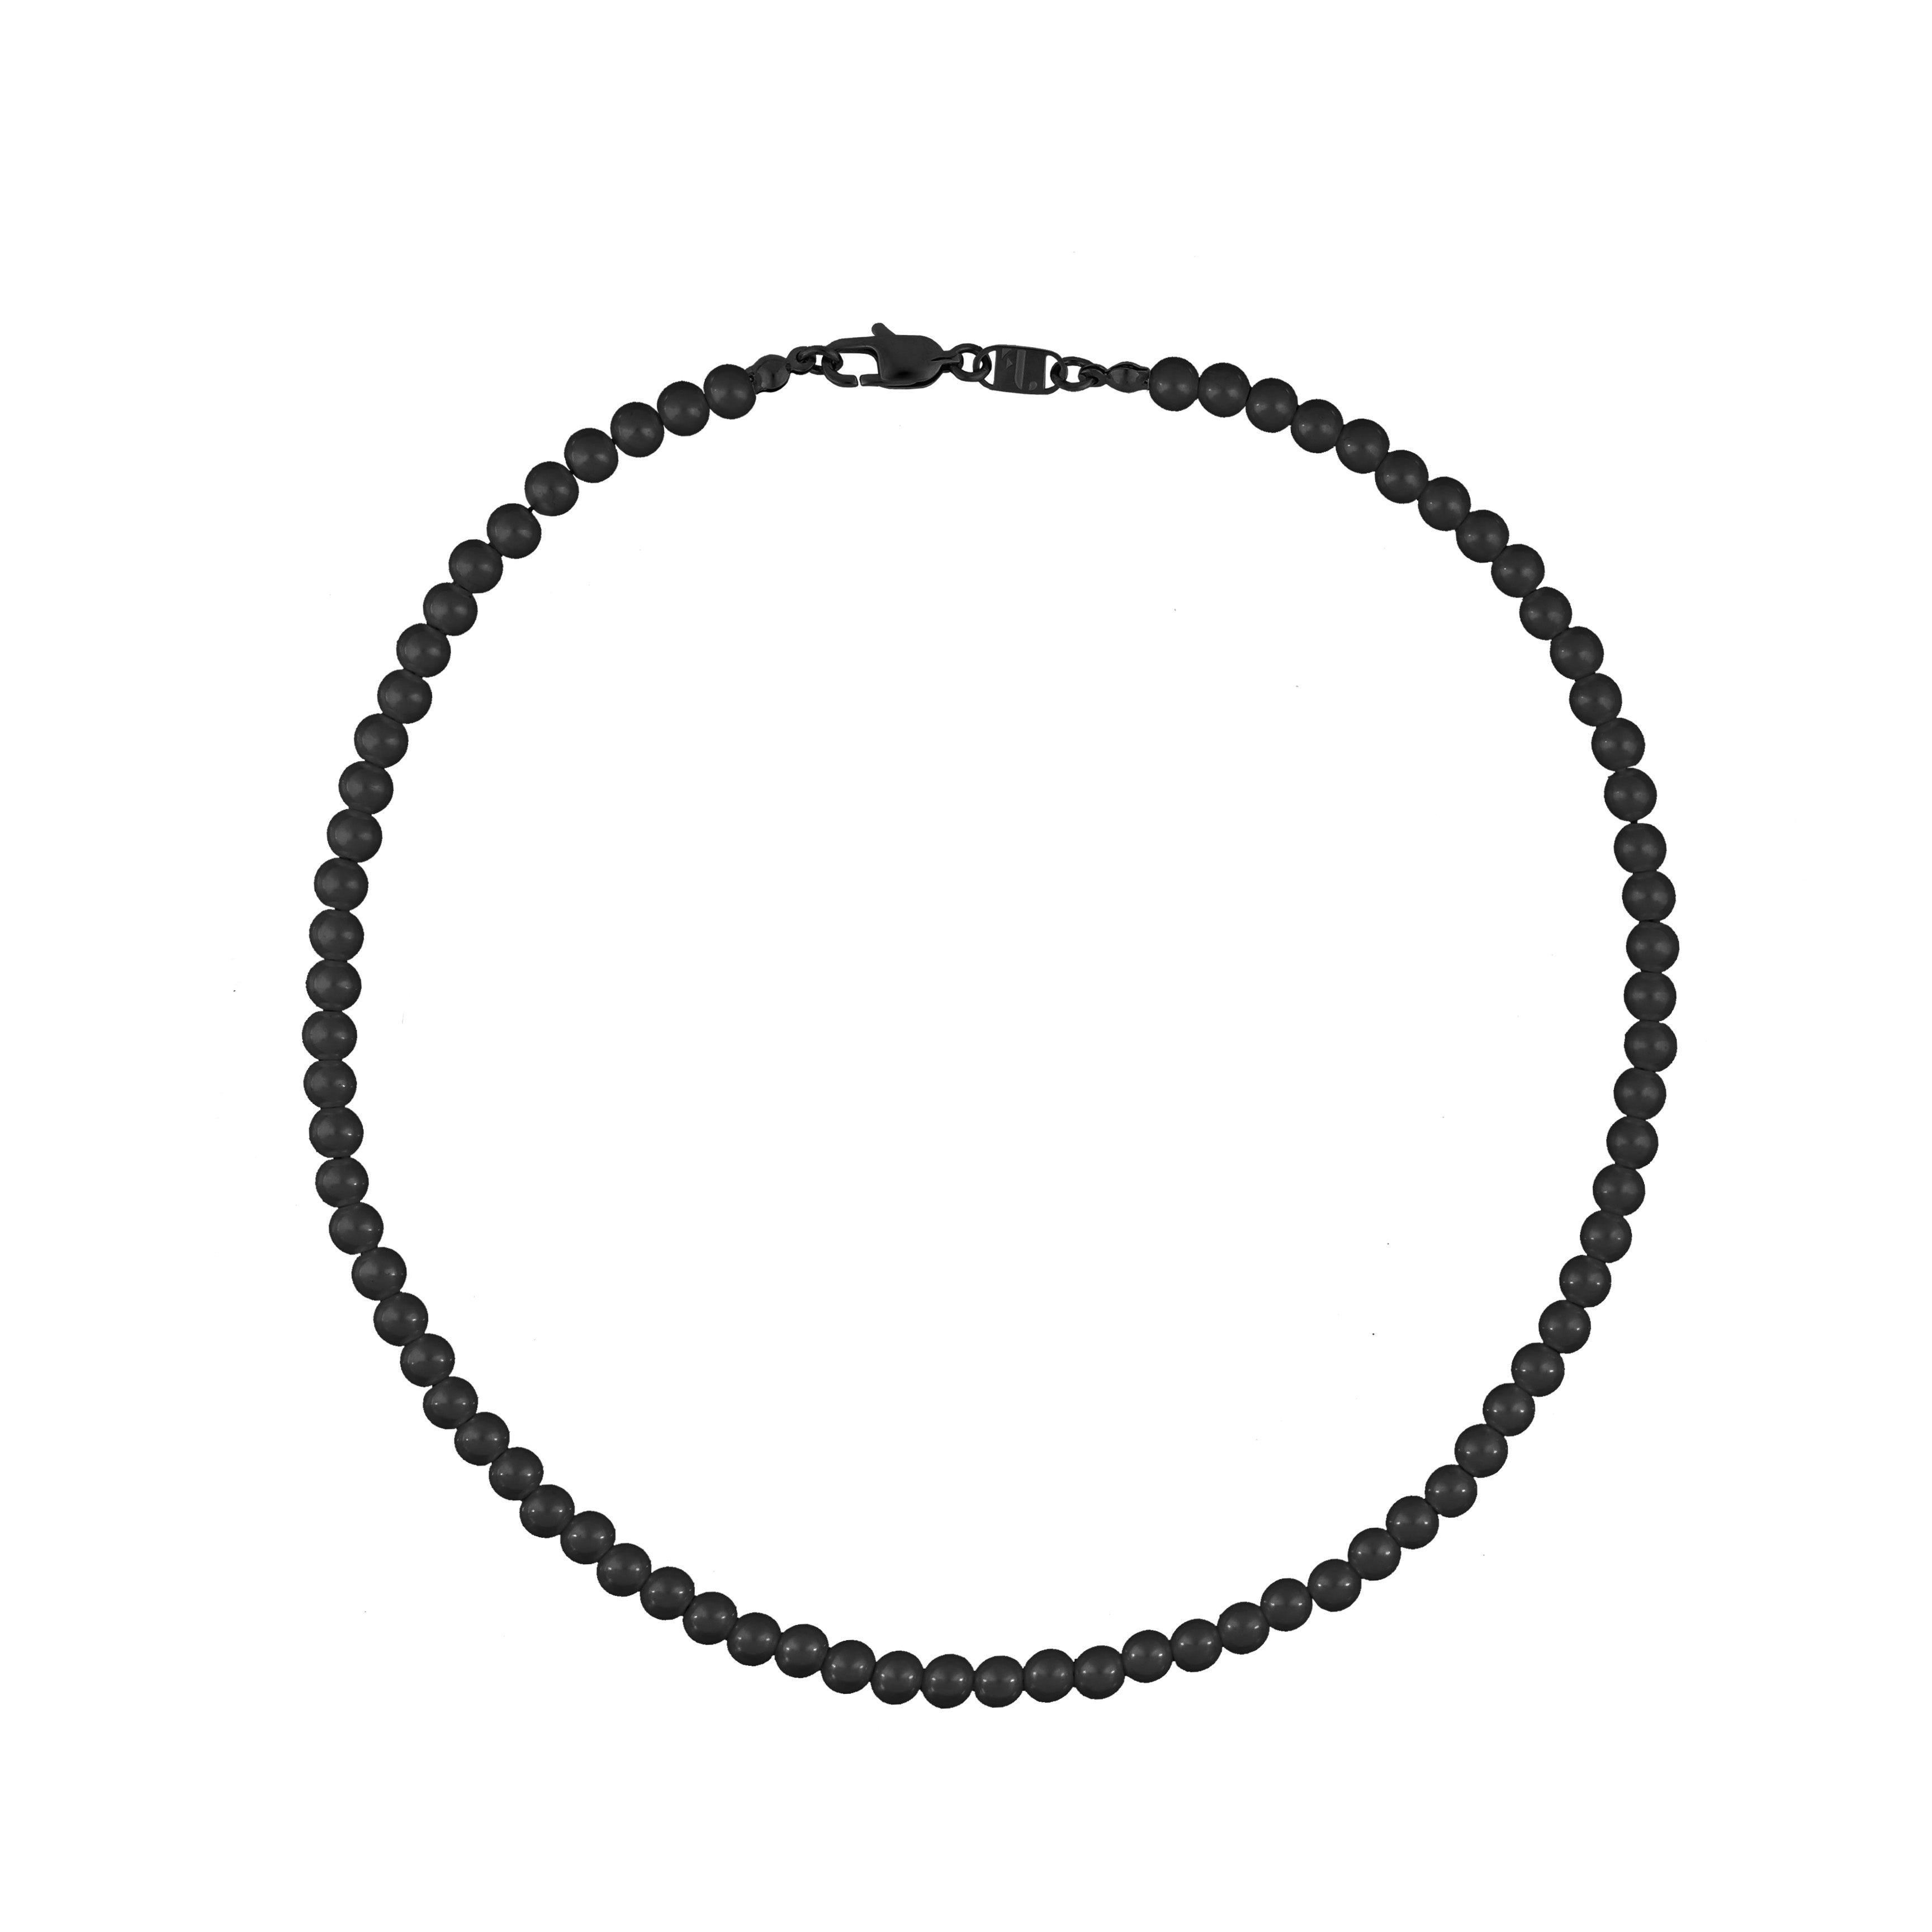 FJ Watches black pearls beads necklace men women 45cm 50cm 6mm onyx stone pierre collier noir